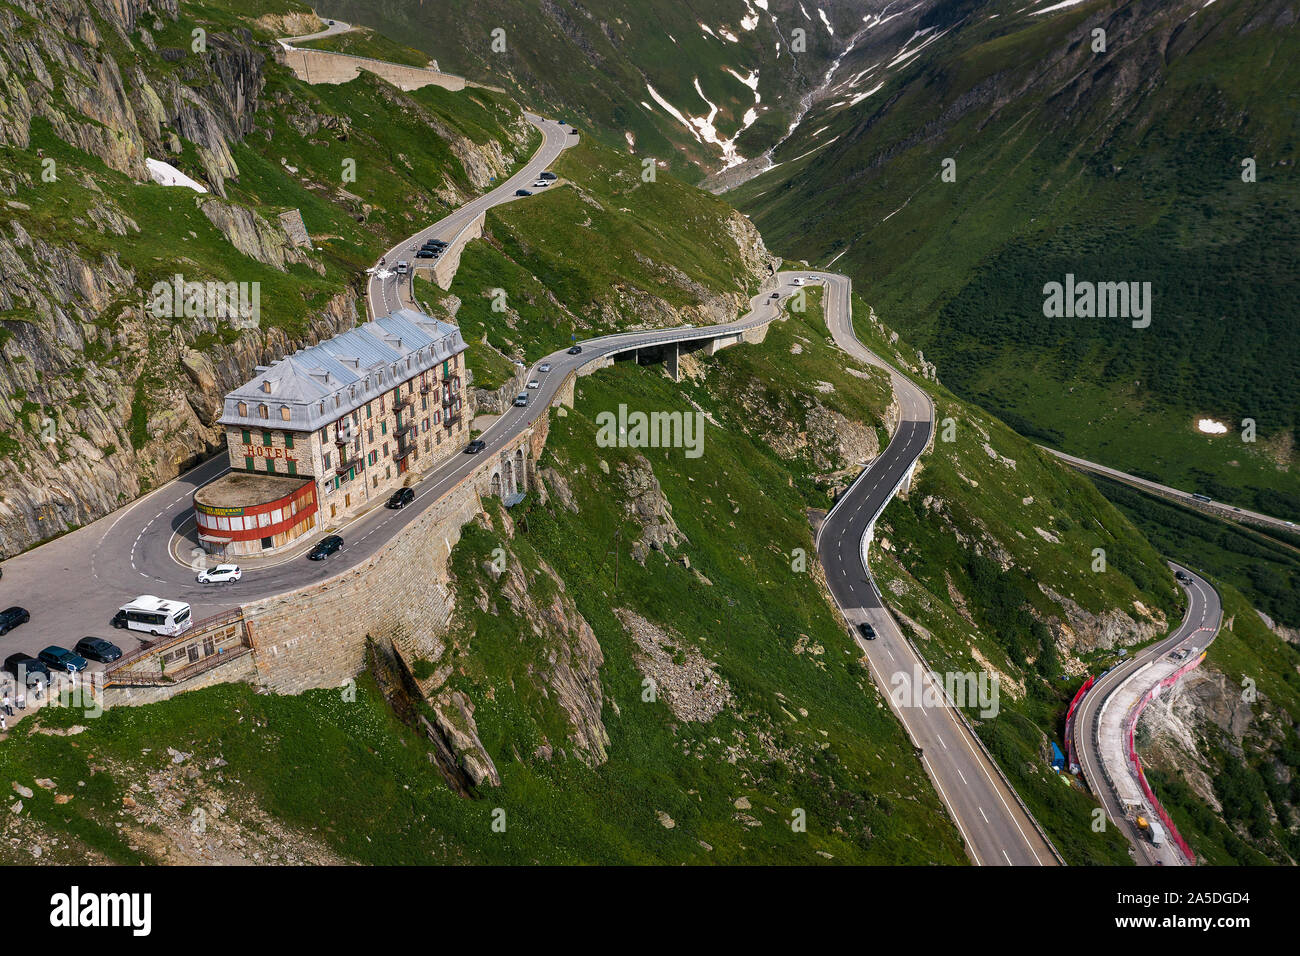 Vue aérienne de l'hôtel de montagne fermée à Belvedere Furka, Suisse Banque D'Images